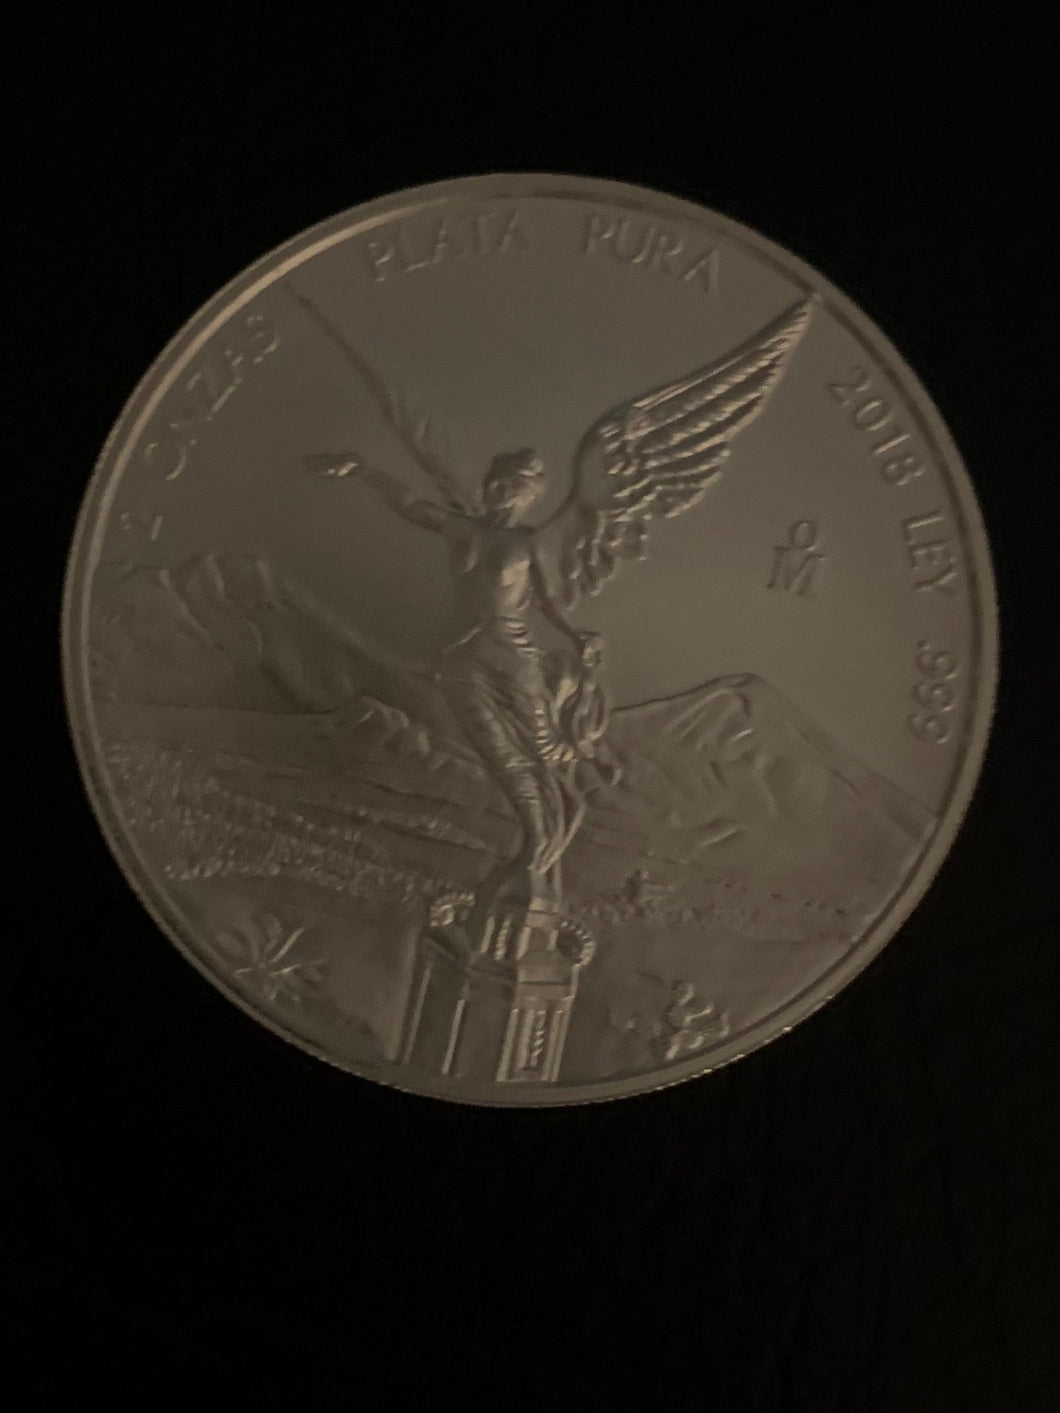 2018 2 oz Mexican Silver Libertad Coin